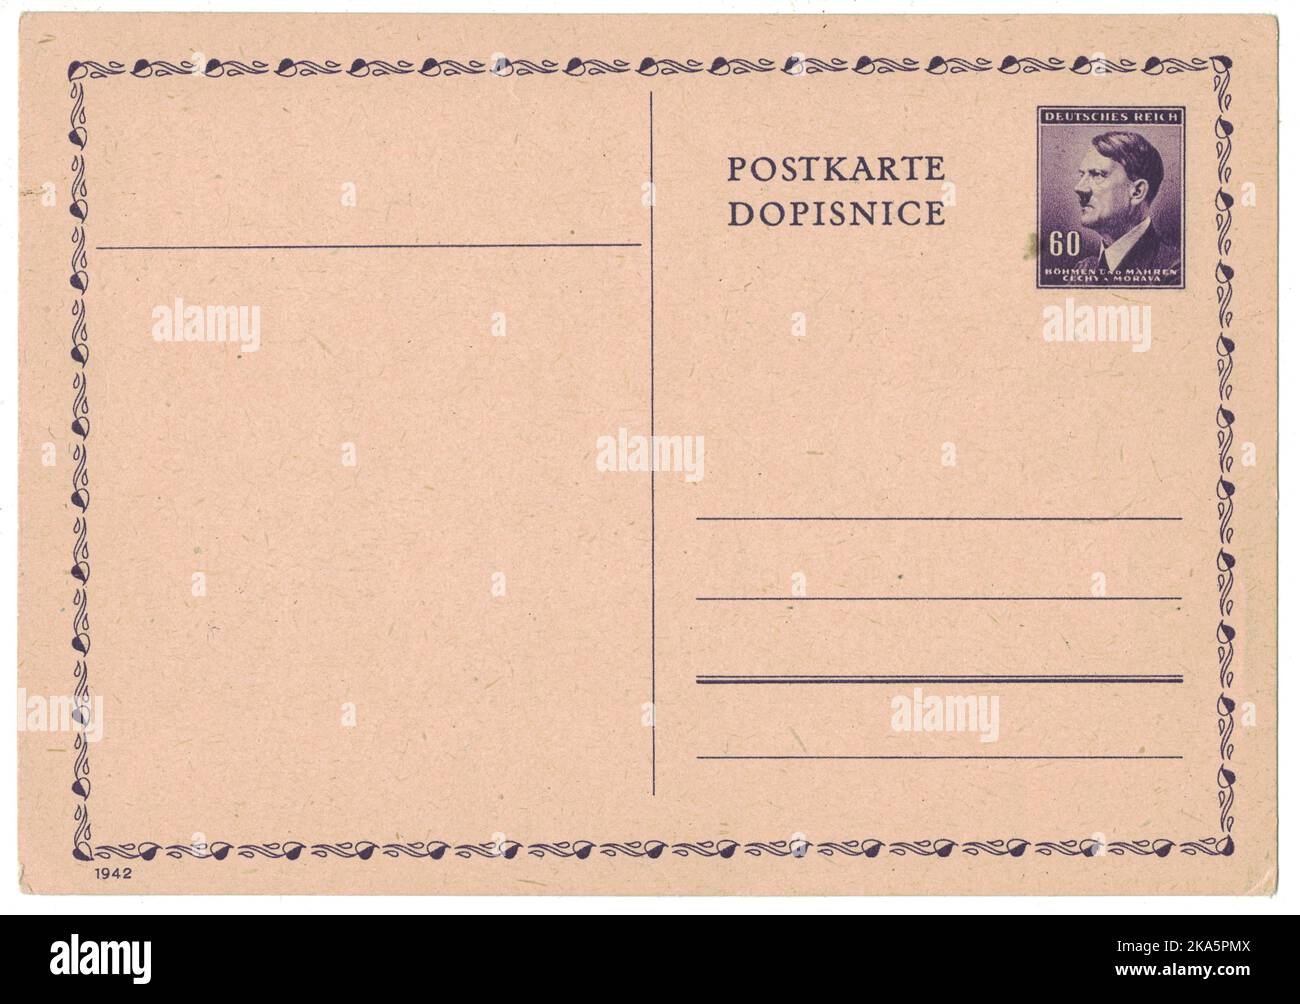 ALLEMAGNE (PROTECTORAT DE LA BOHÊME ET DE LA MORAVIE) - VERS 1942 : l'ancienne carte postale avec timbre postal imprimé montre le portrait d'Adolf Hitler (homme politique, chef du parti nazi, dictateur, ancien combattant de la guerre mondiale), violet, vers 1942 Banque D'Images